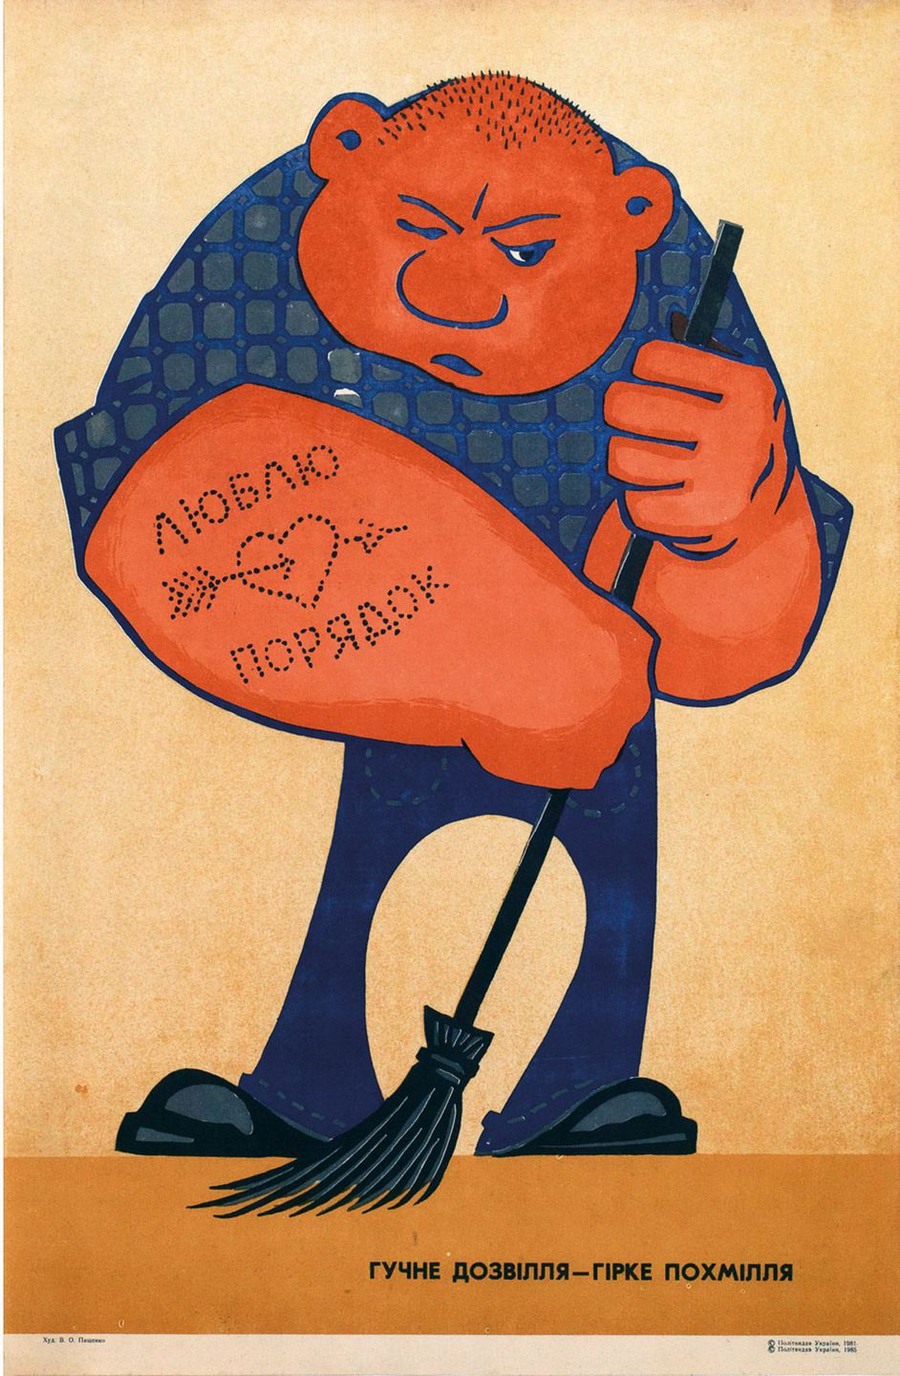 Пьянству бой: антиалкогольные советские плакаты  9